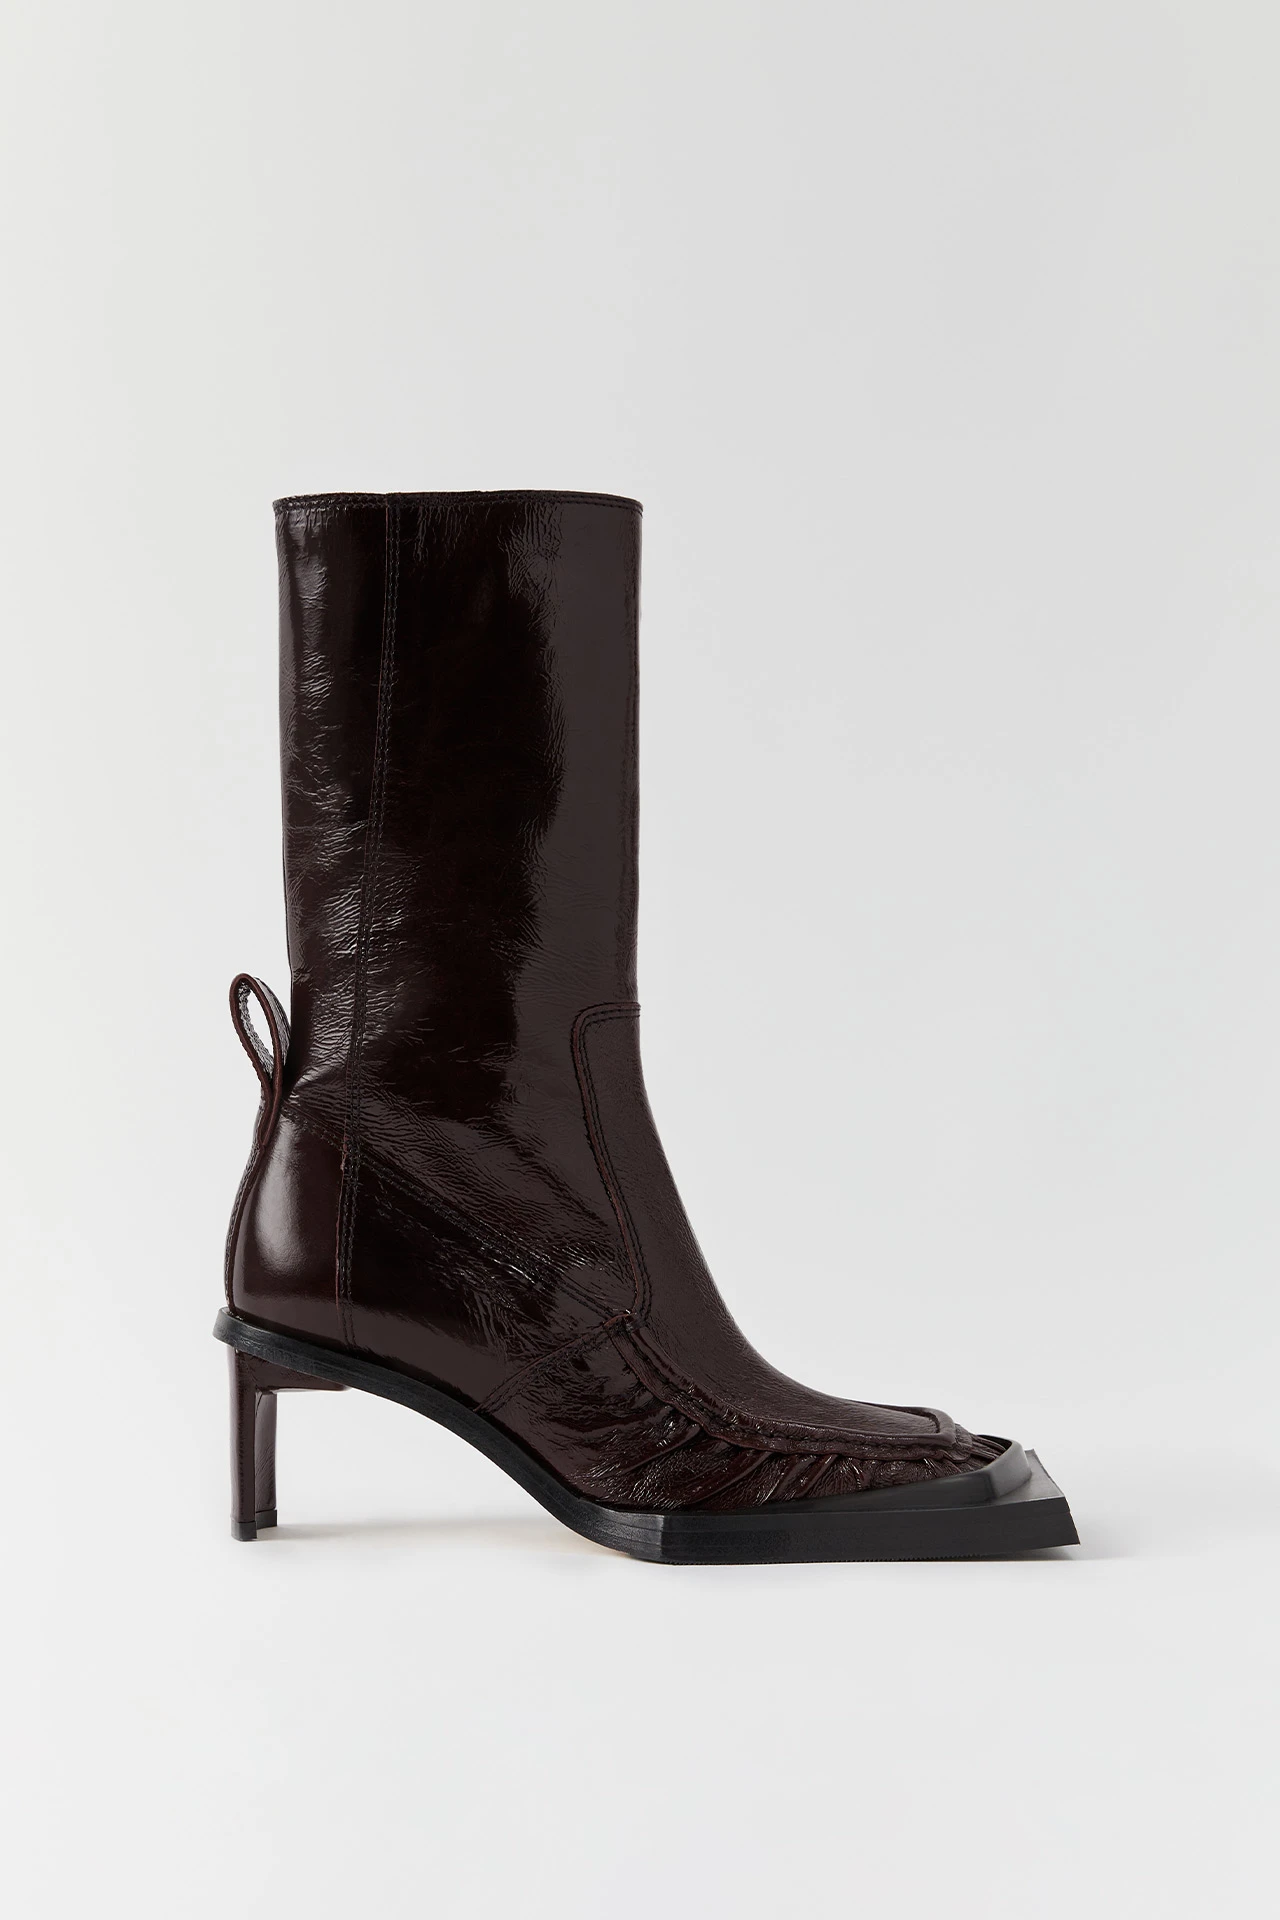 miista-miwa-brown-patent-boots-01